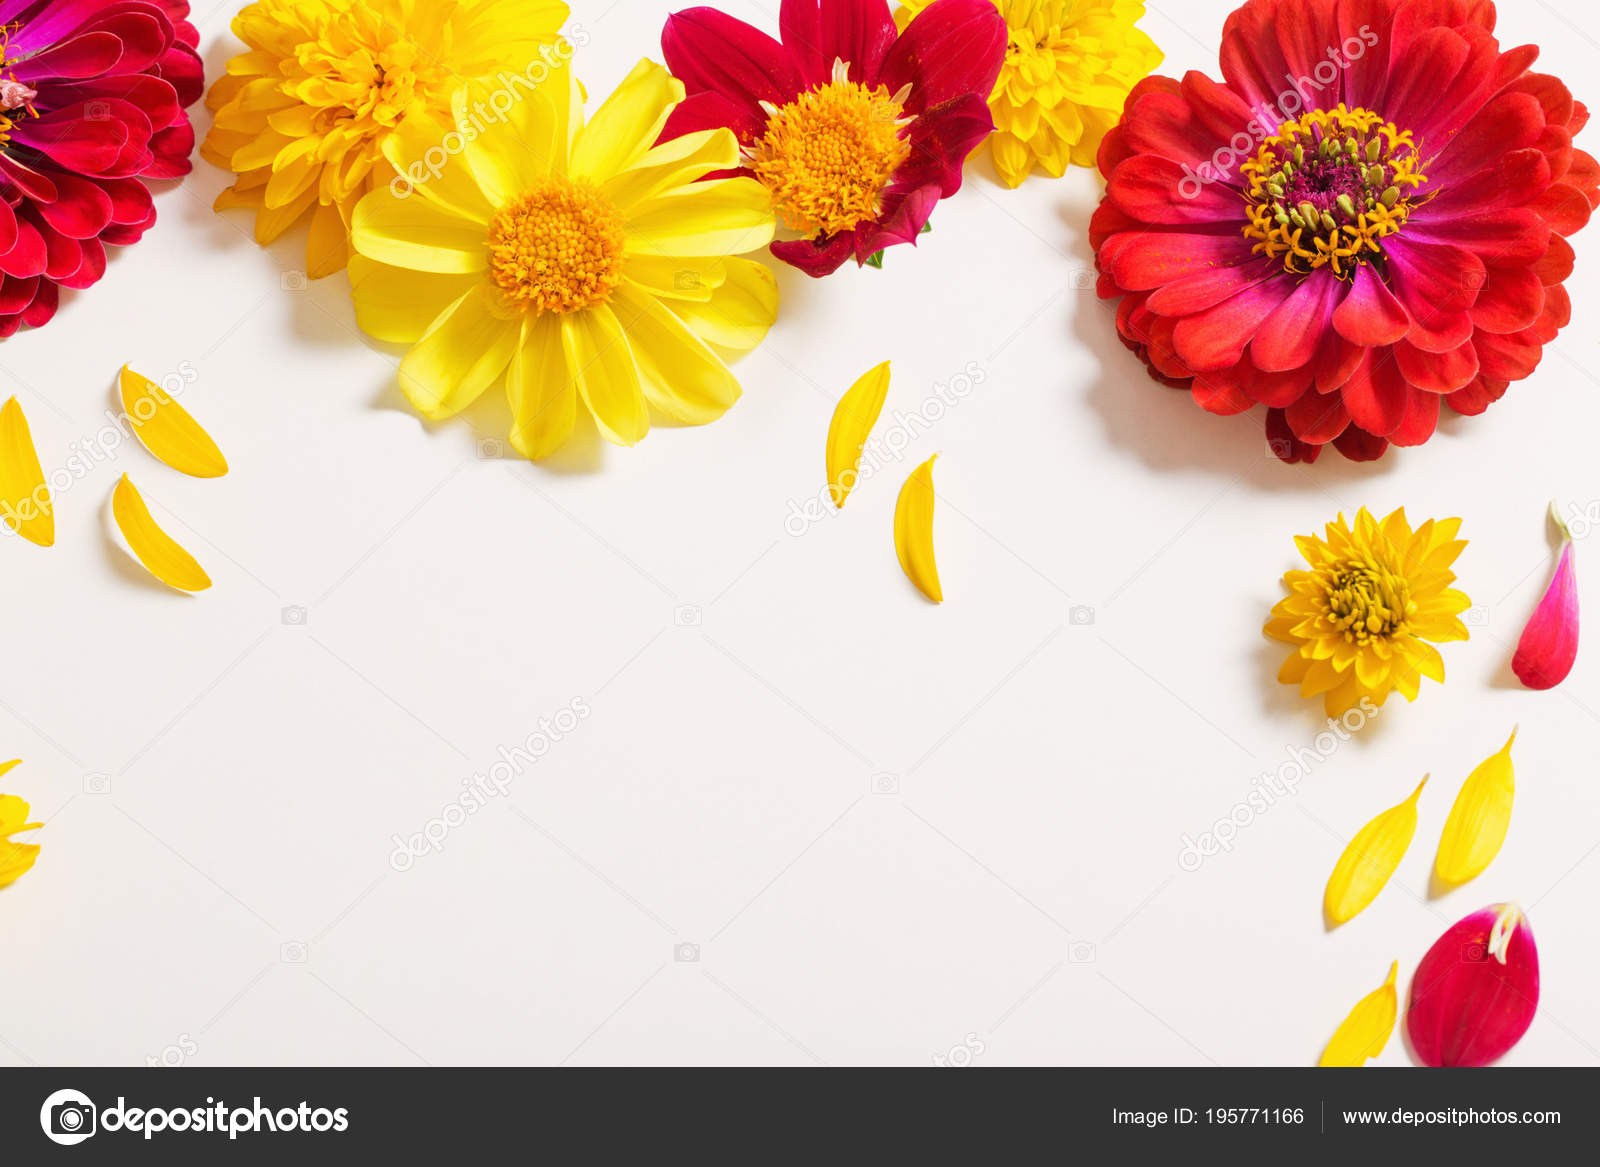 Red Yellow Flowers White Background Stock Photo by ©Kruchenkova 195771166